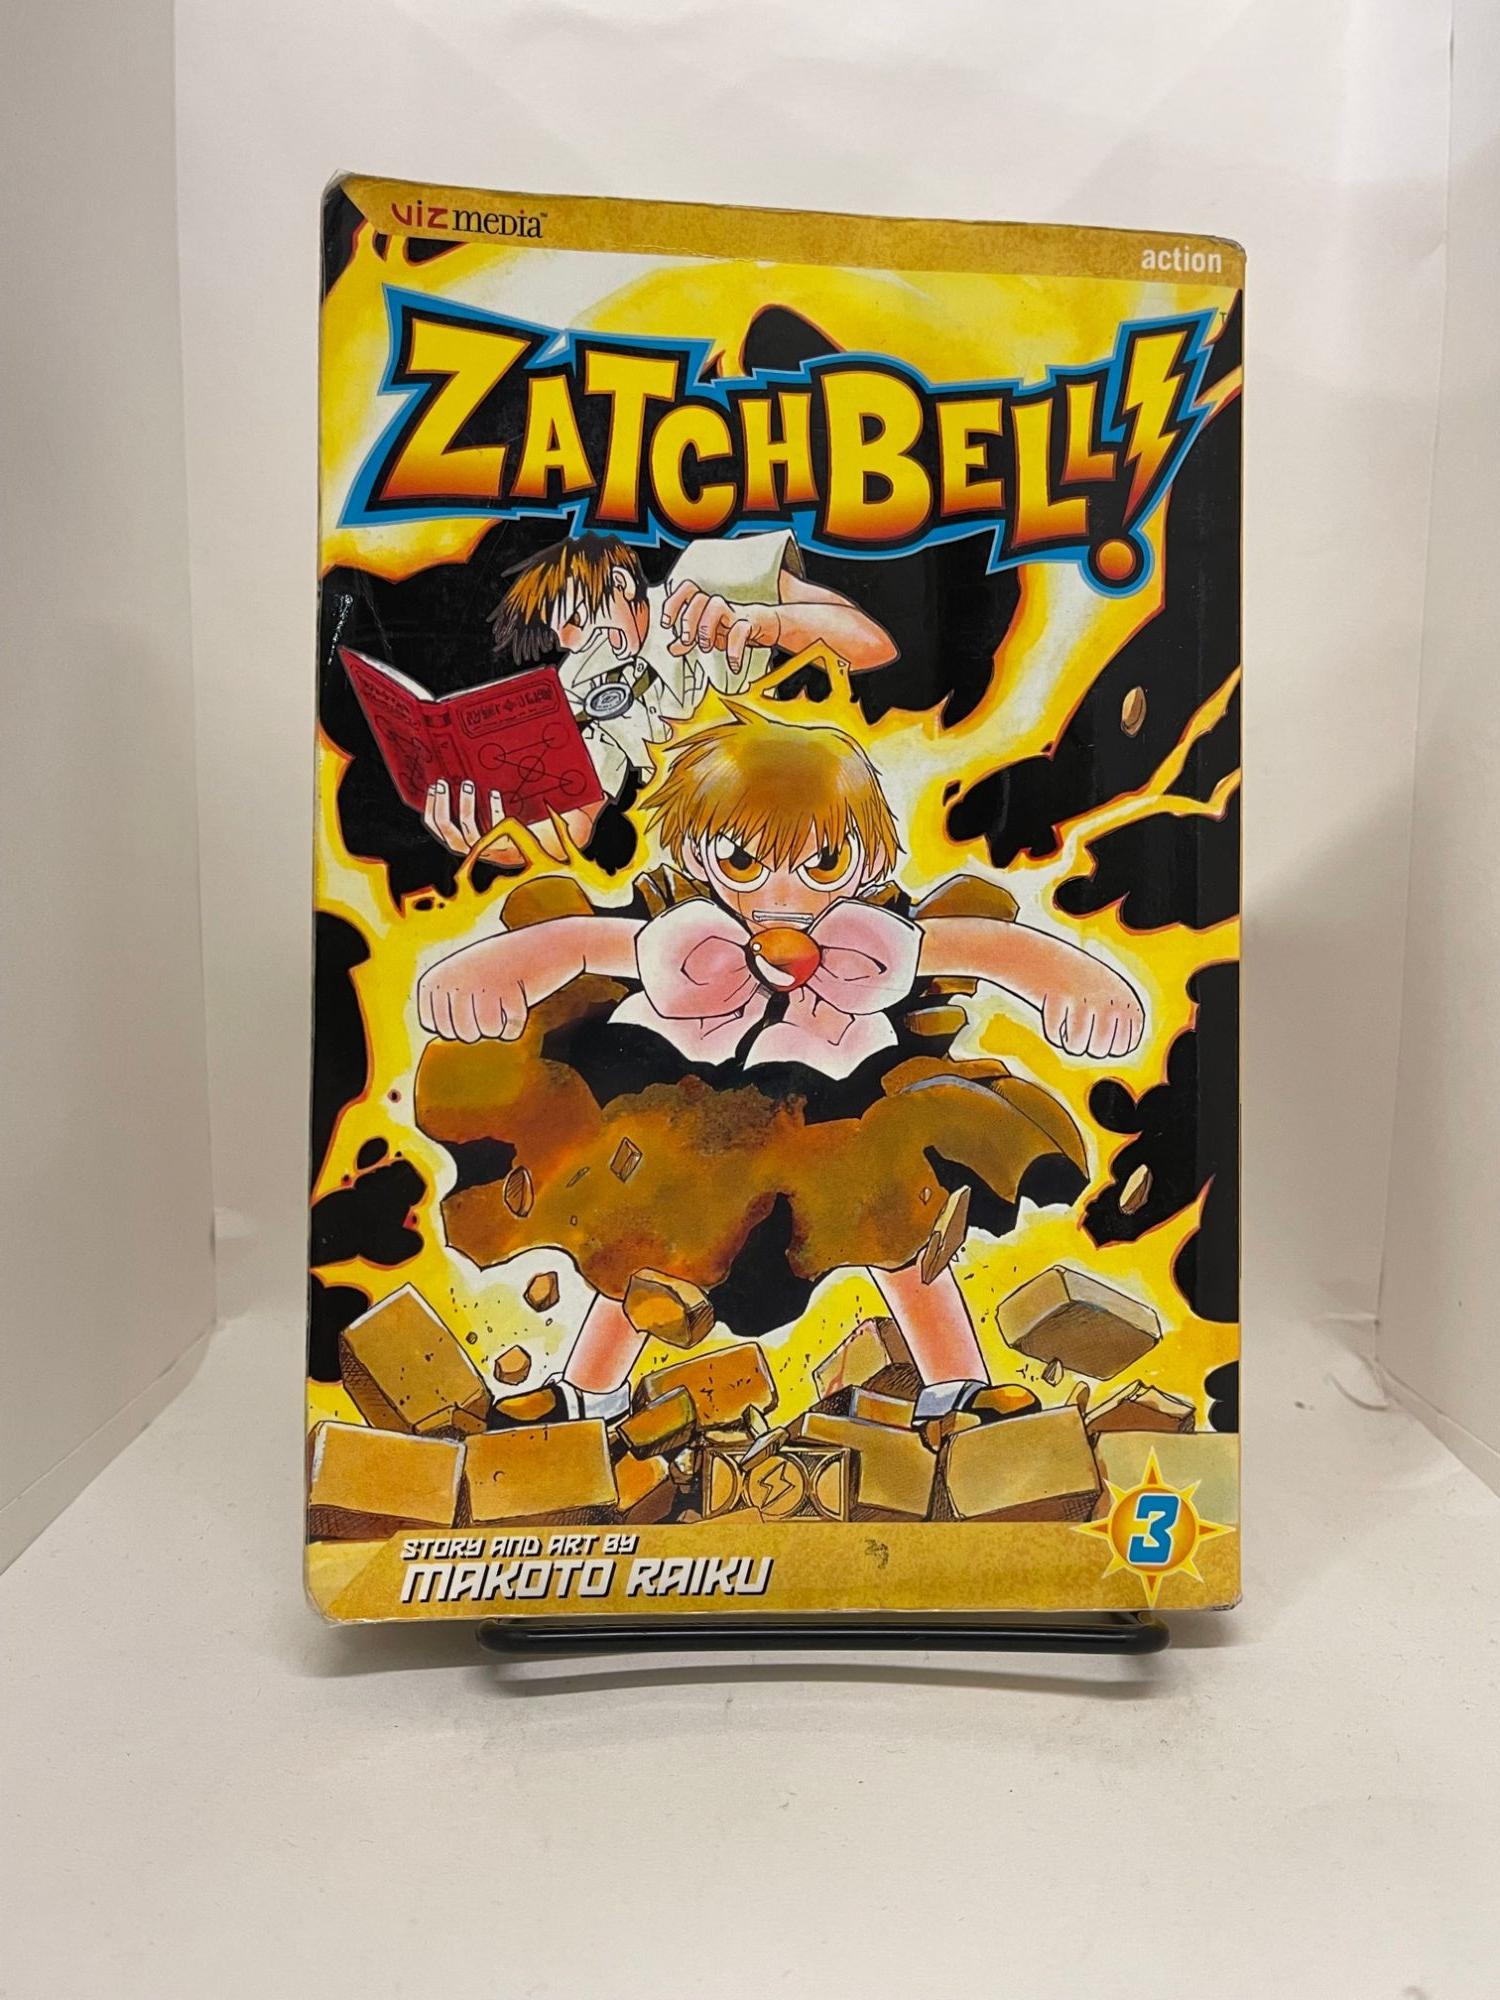 Zatch Bell! Vol. 5